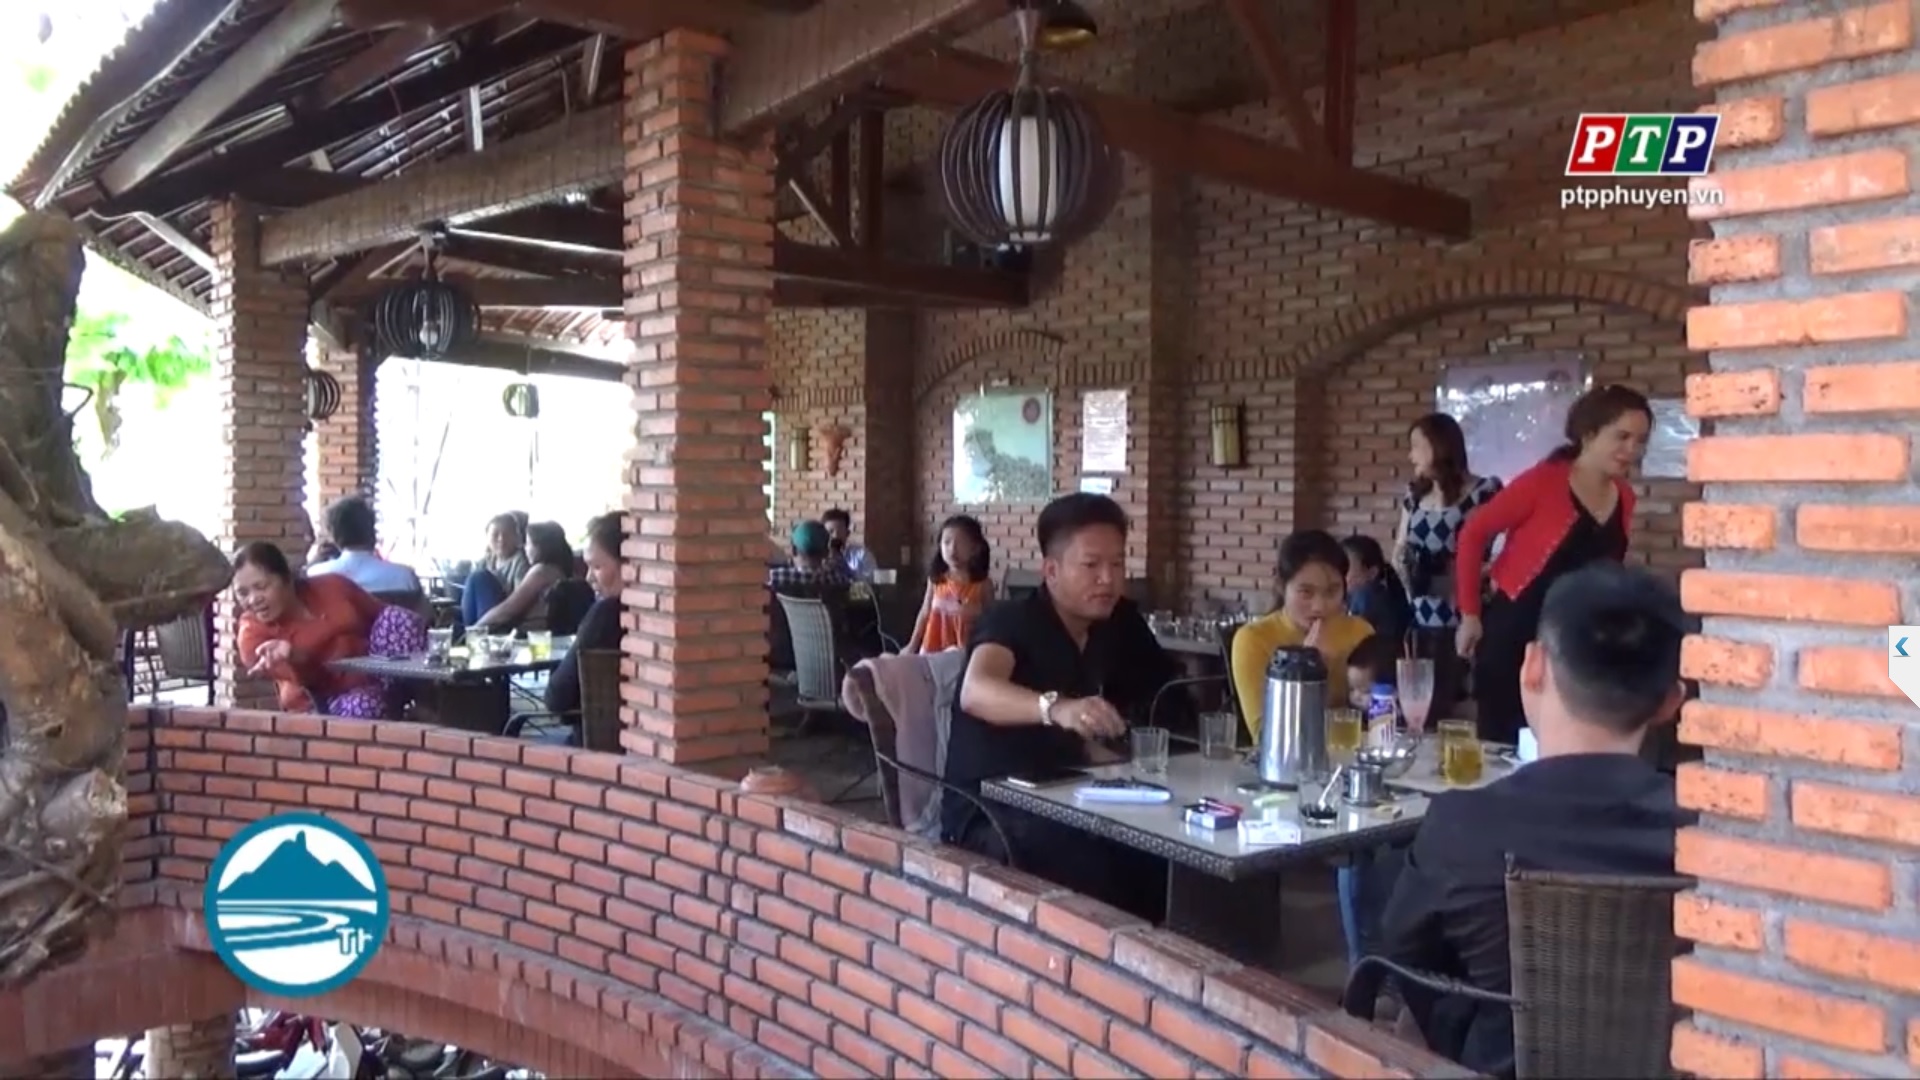 Các nhà hàng, điểm ăn uống sẵn sàng đón khách trong dịp Tết Canh Tý 2020